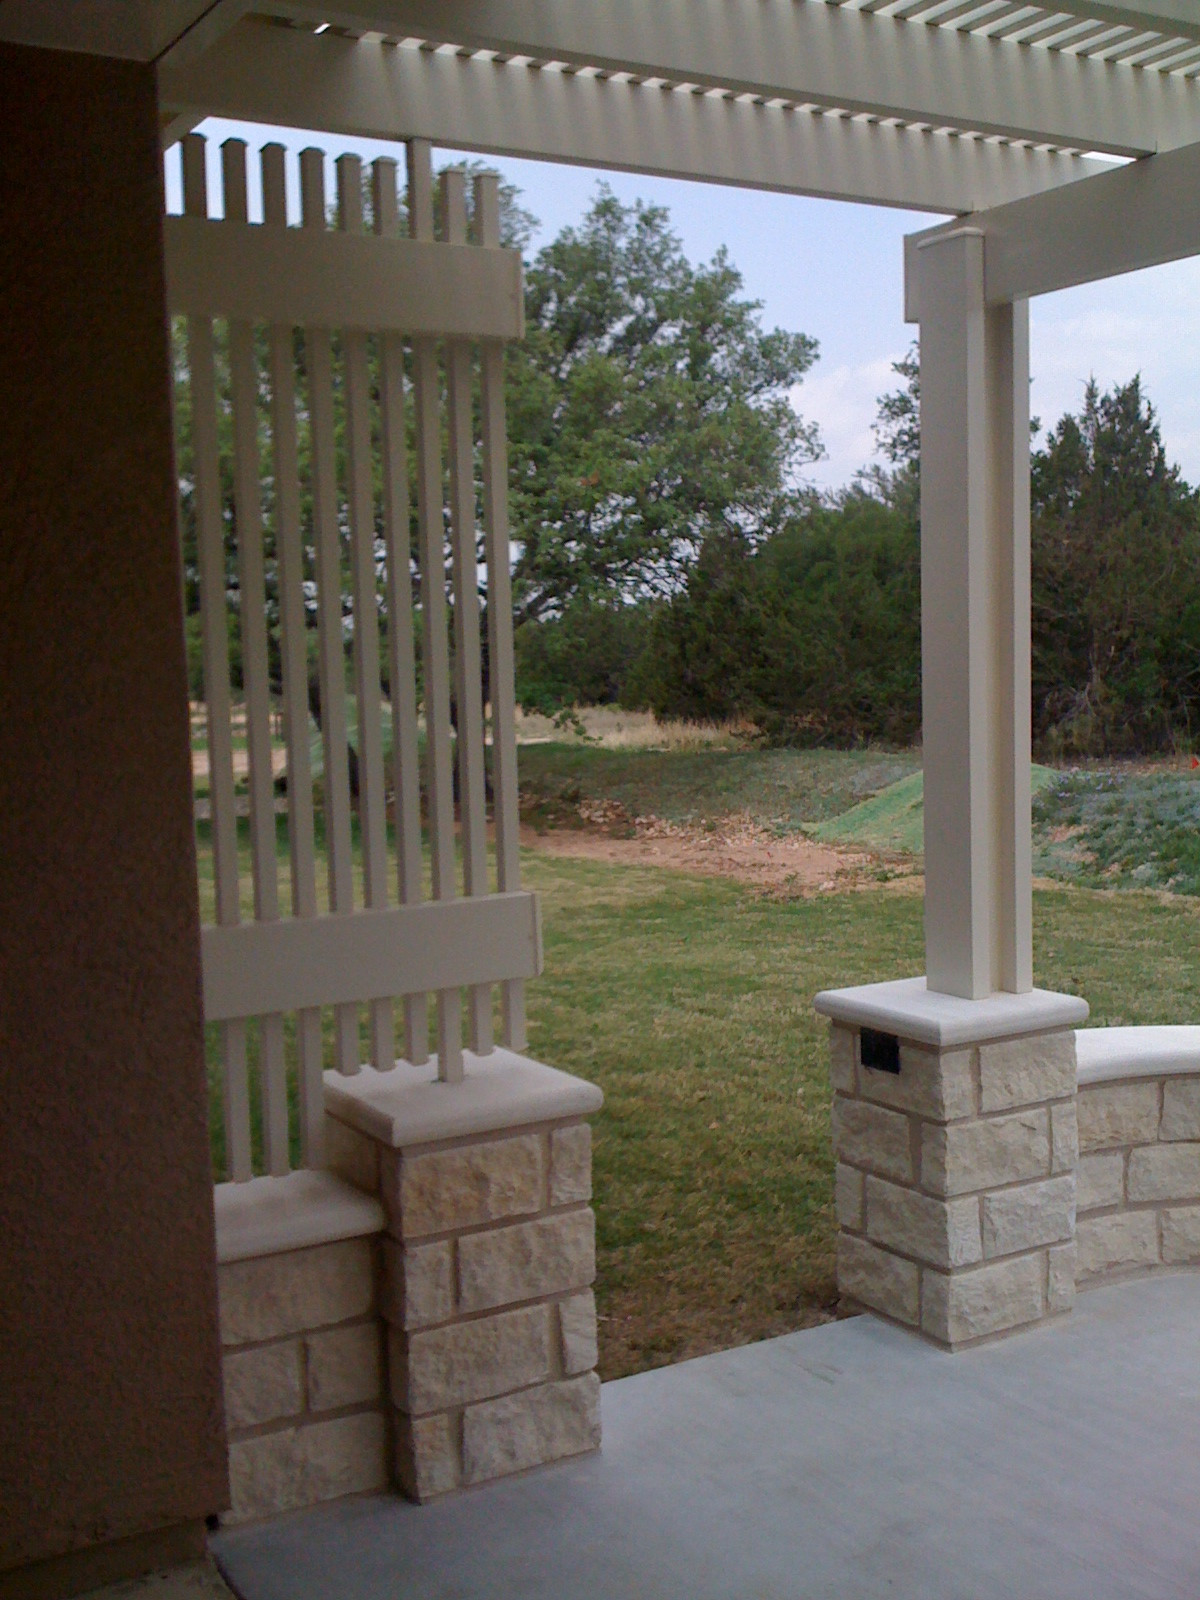 Concrete patio extension w/ decorative Alumawood privacy slats and pergola